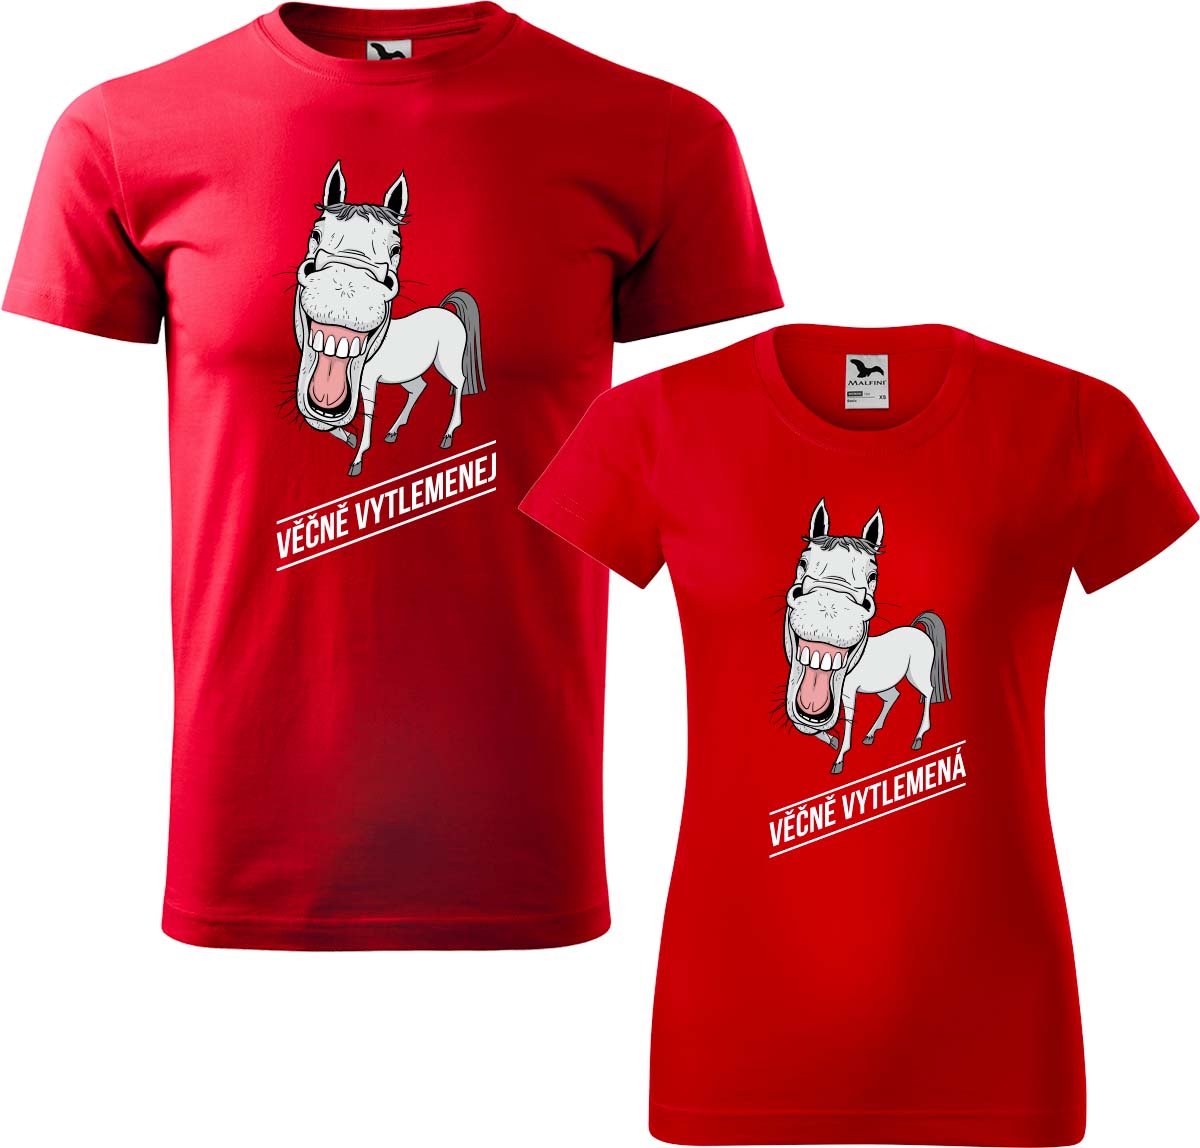 Trička pro páry - Věčně vytlemenej a věčně vytlemená Barva: Červená (07), Velikost dámské tričko: S, Velikost pánské tričko: L